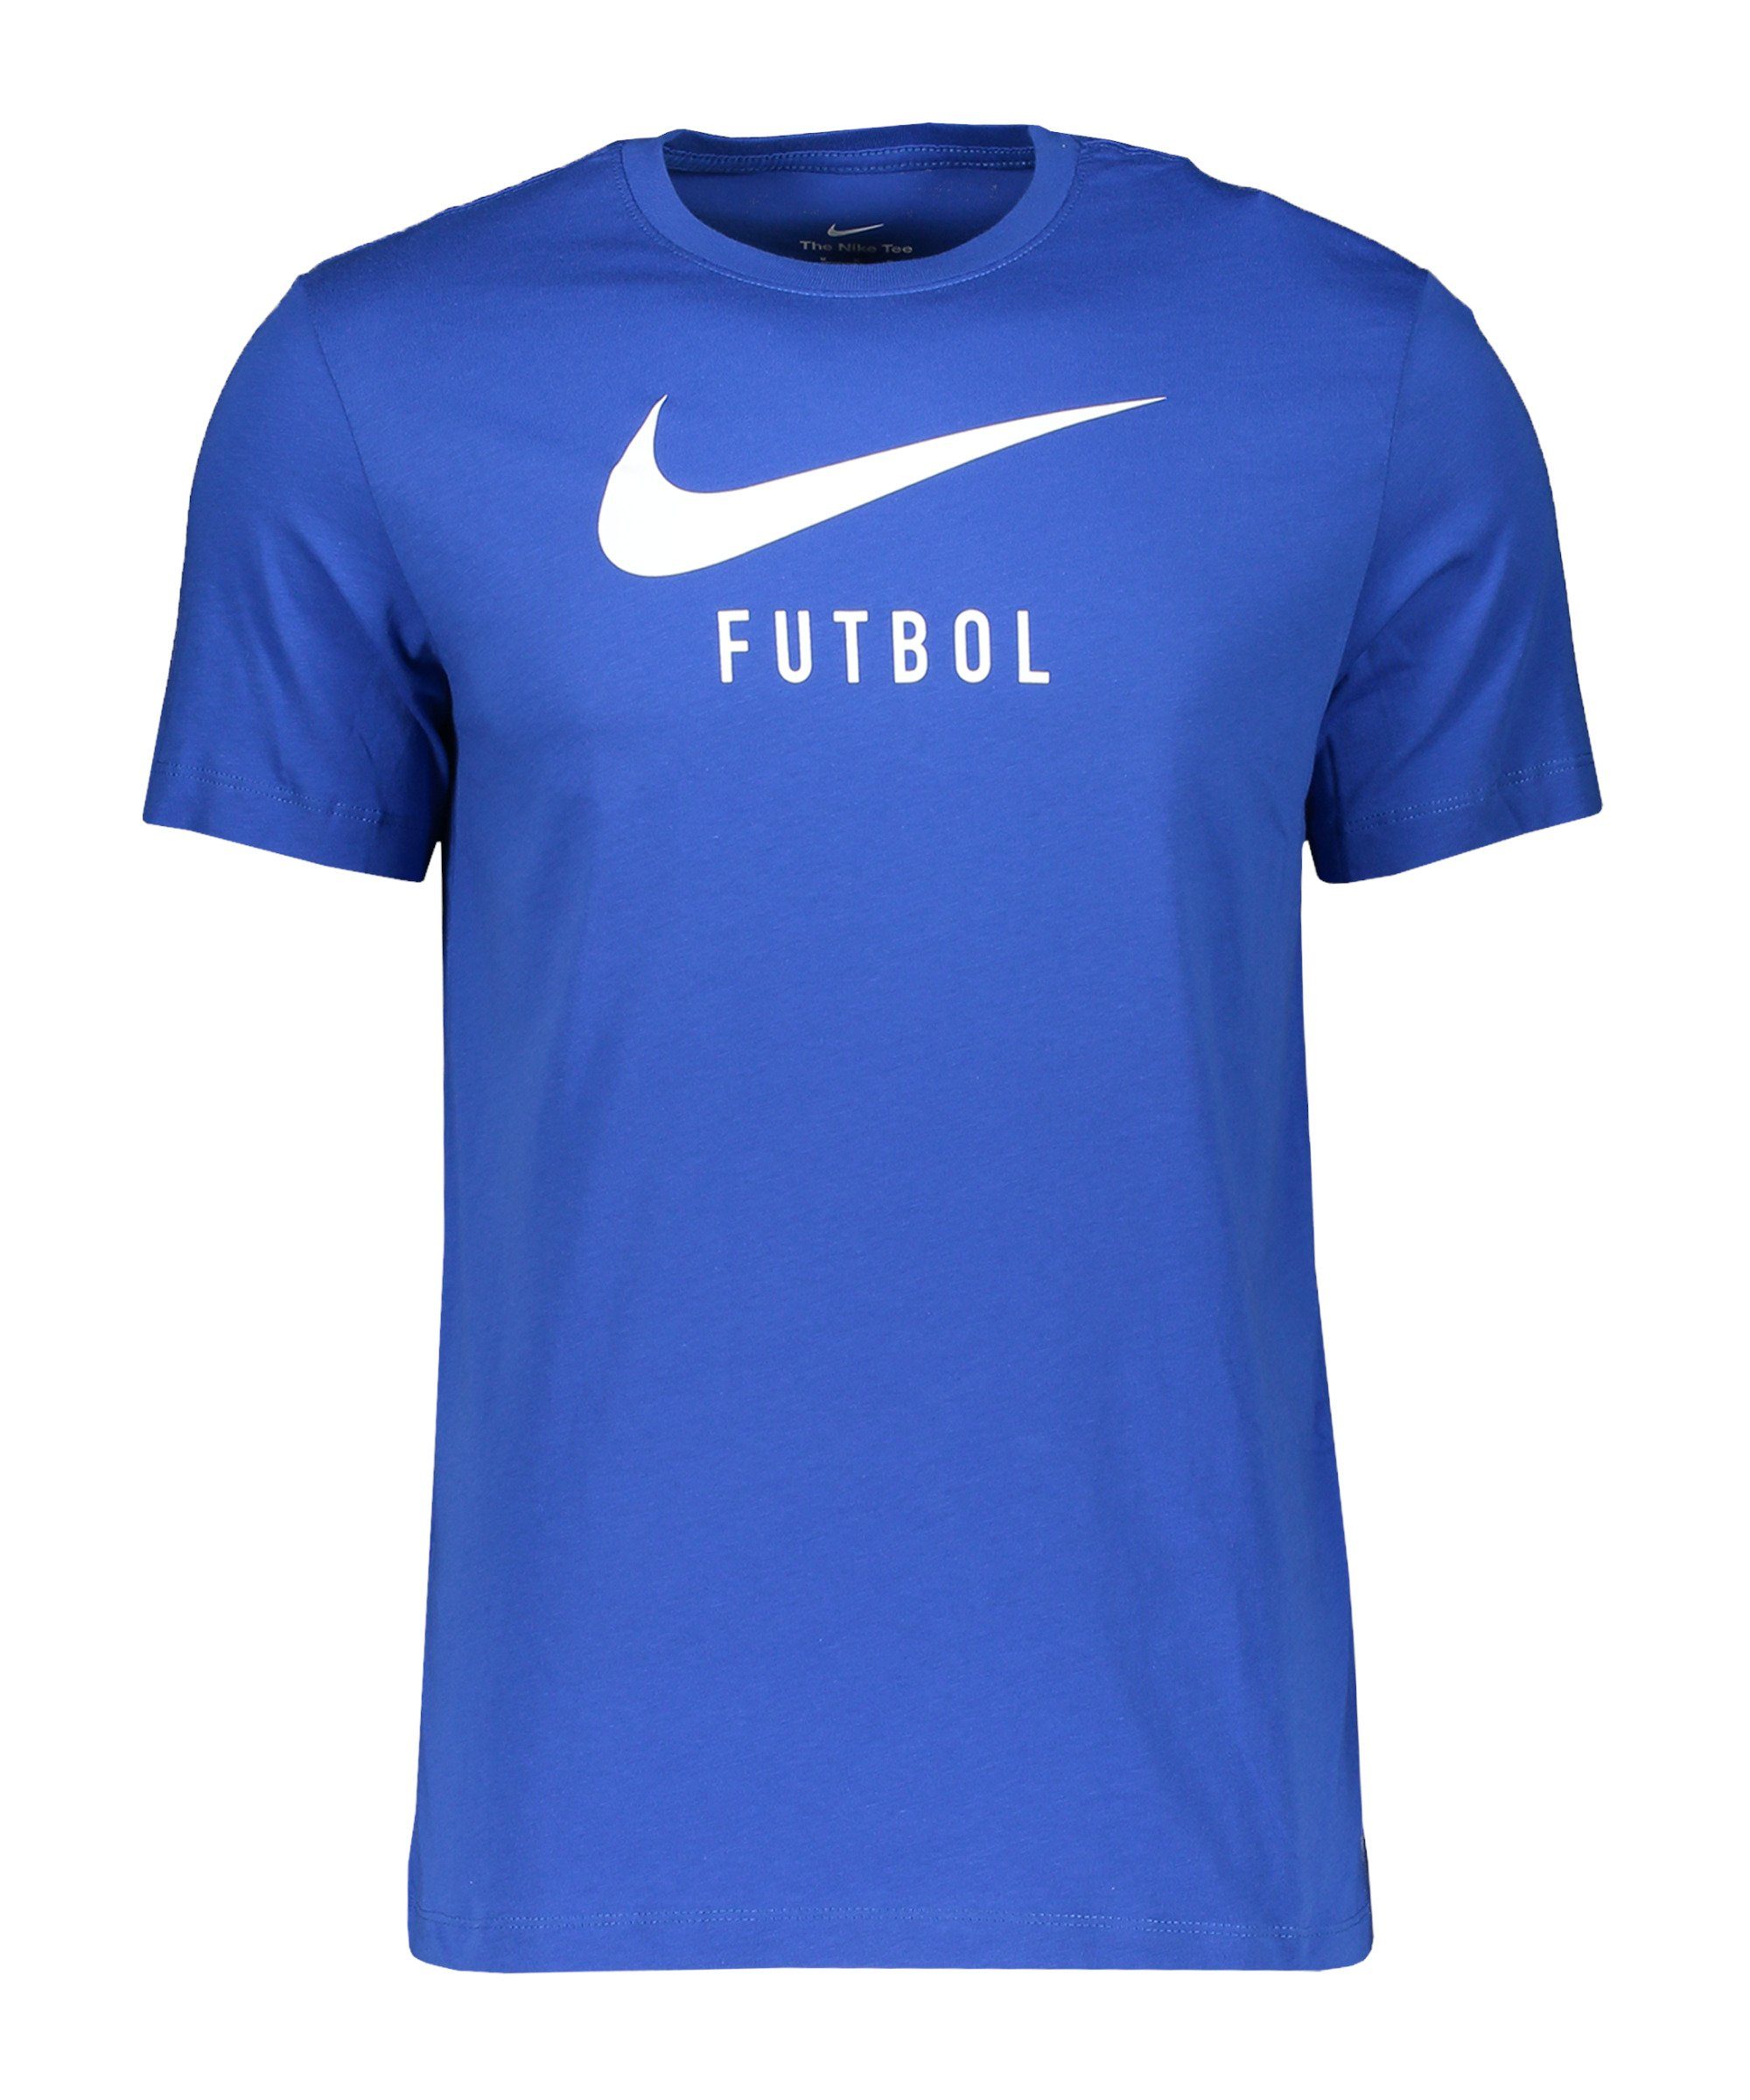 Nike T-Shirt Soccer T-Shirt default blauweissweiss